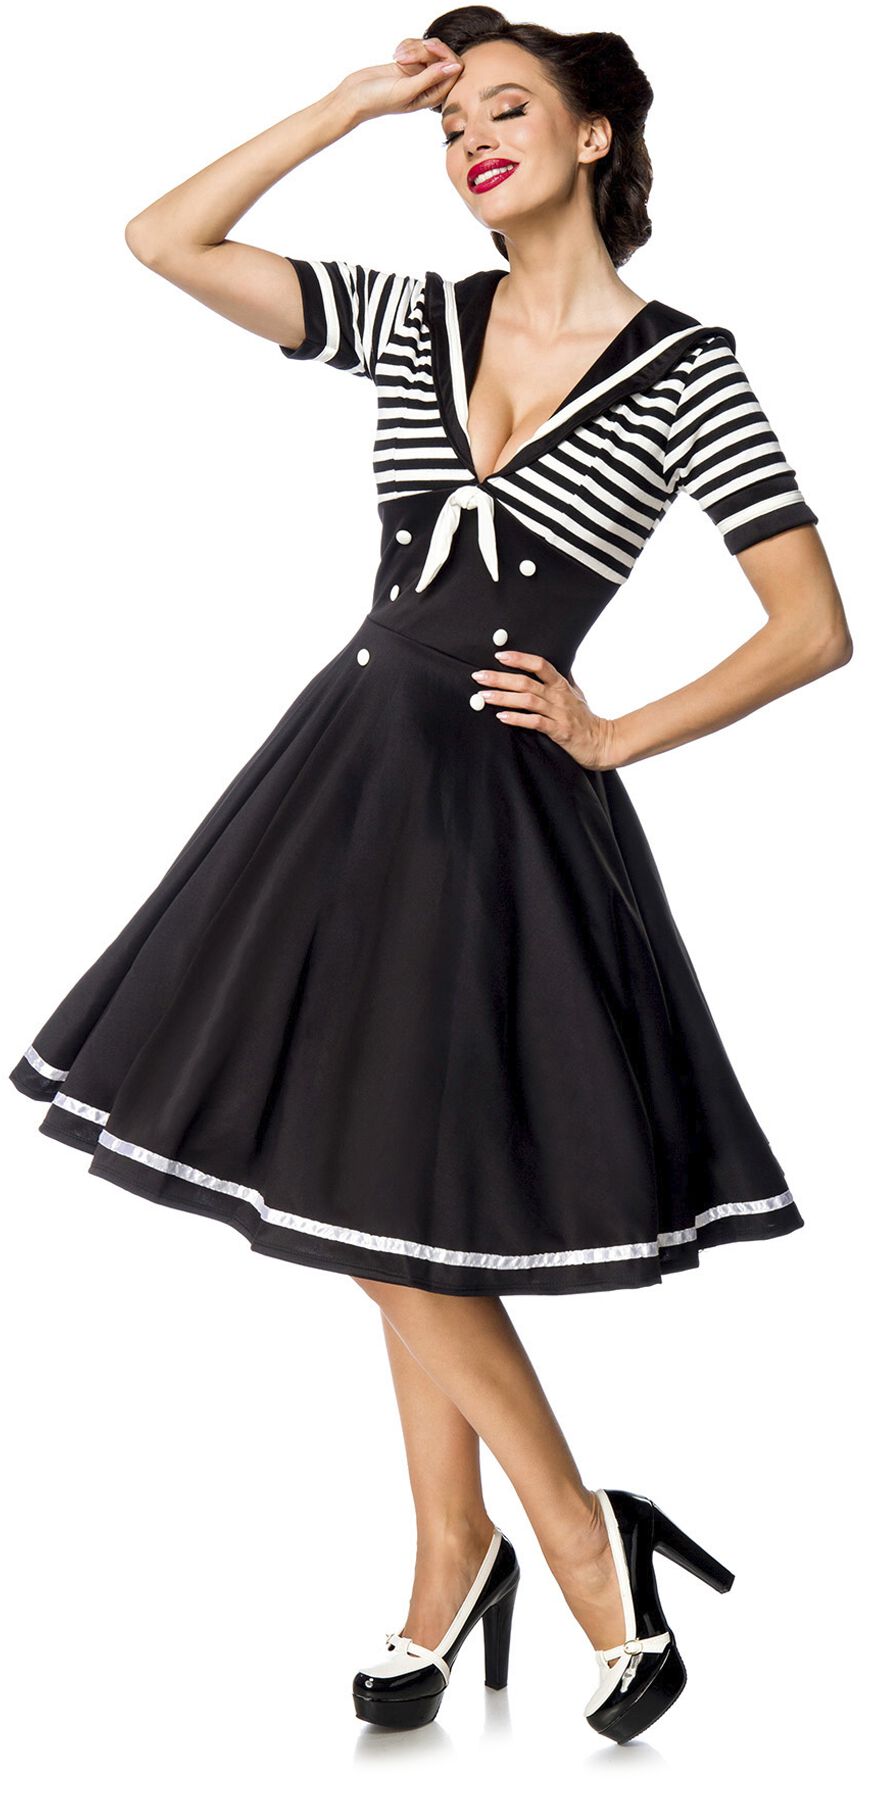 Belsira Swing-Kleid im Marinelook Mittellanges Kleid schwarz weiß in S